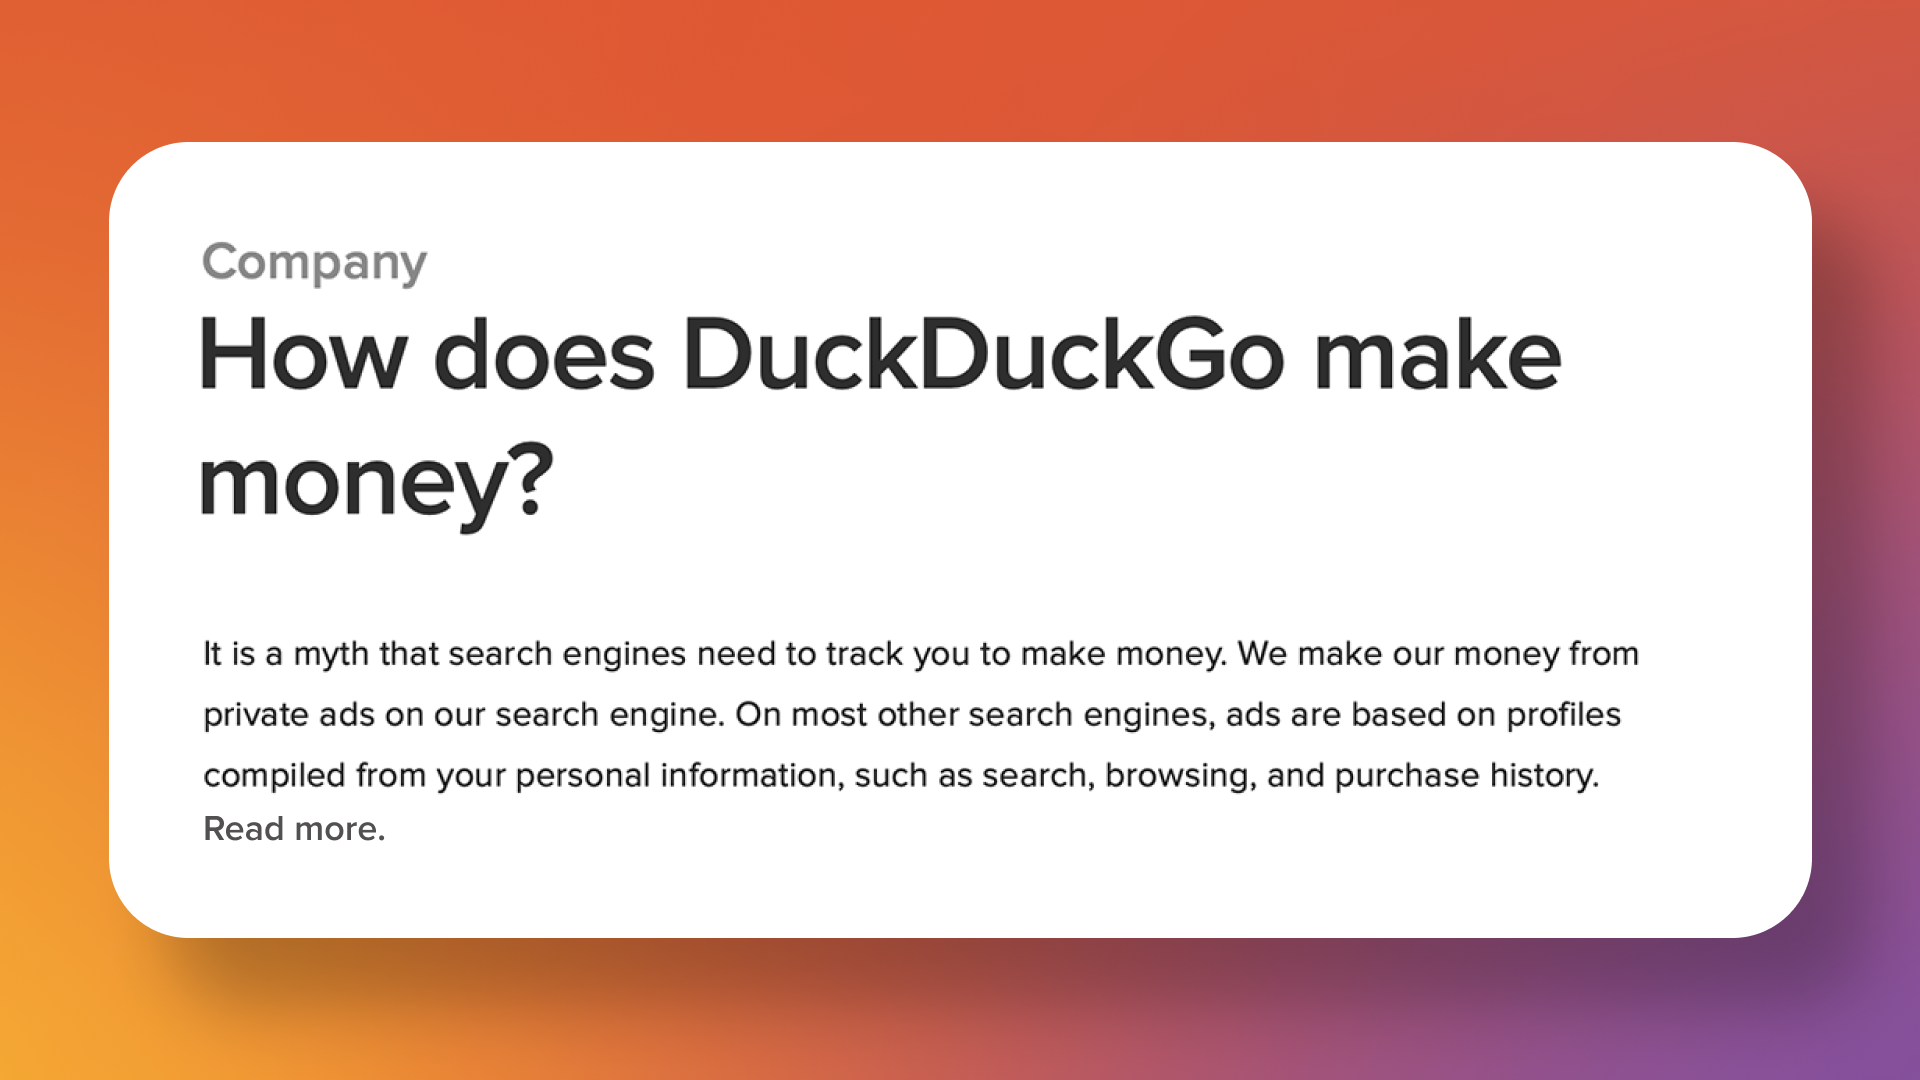 duckduckgo.com